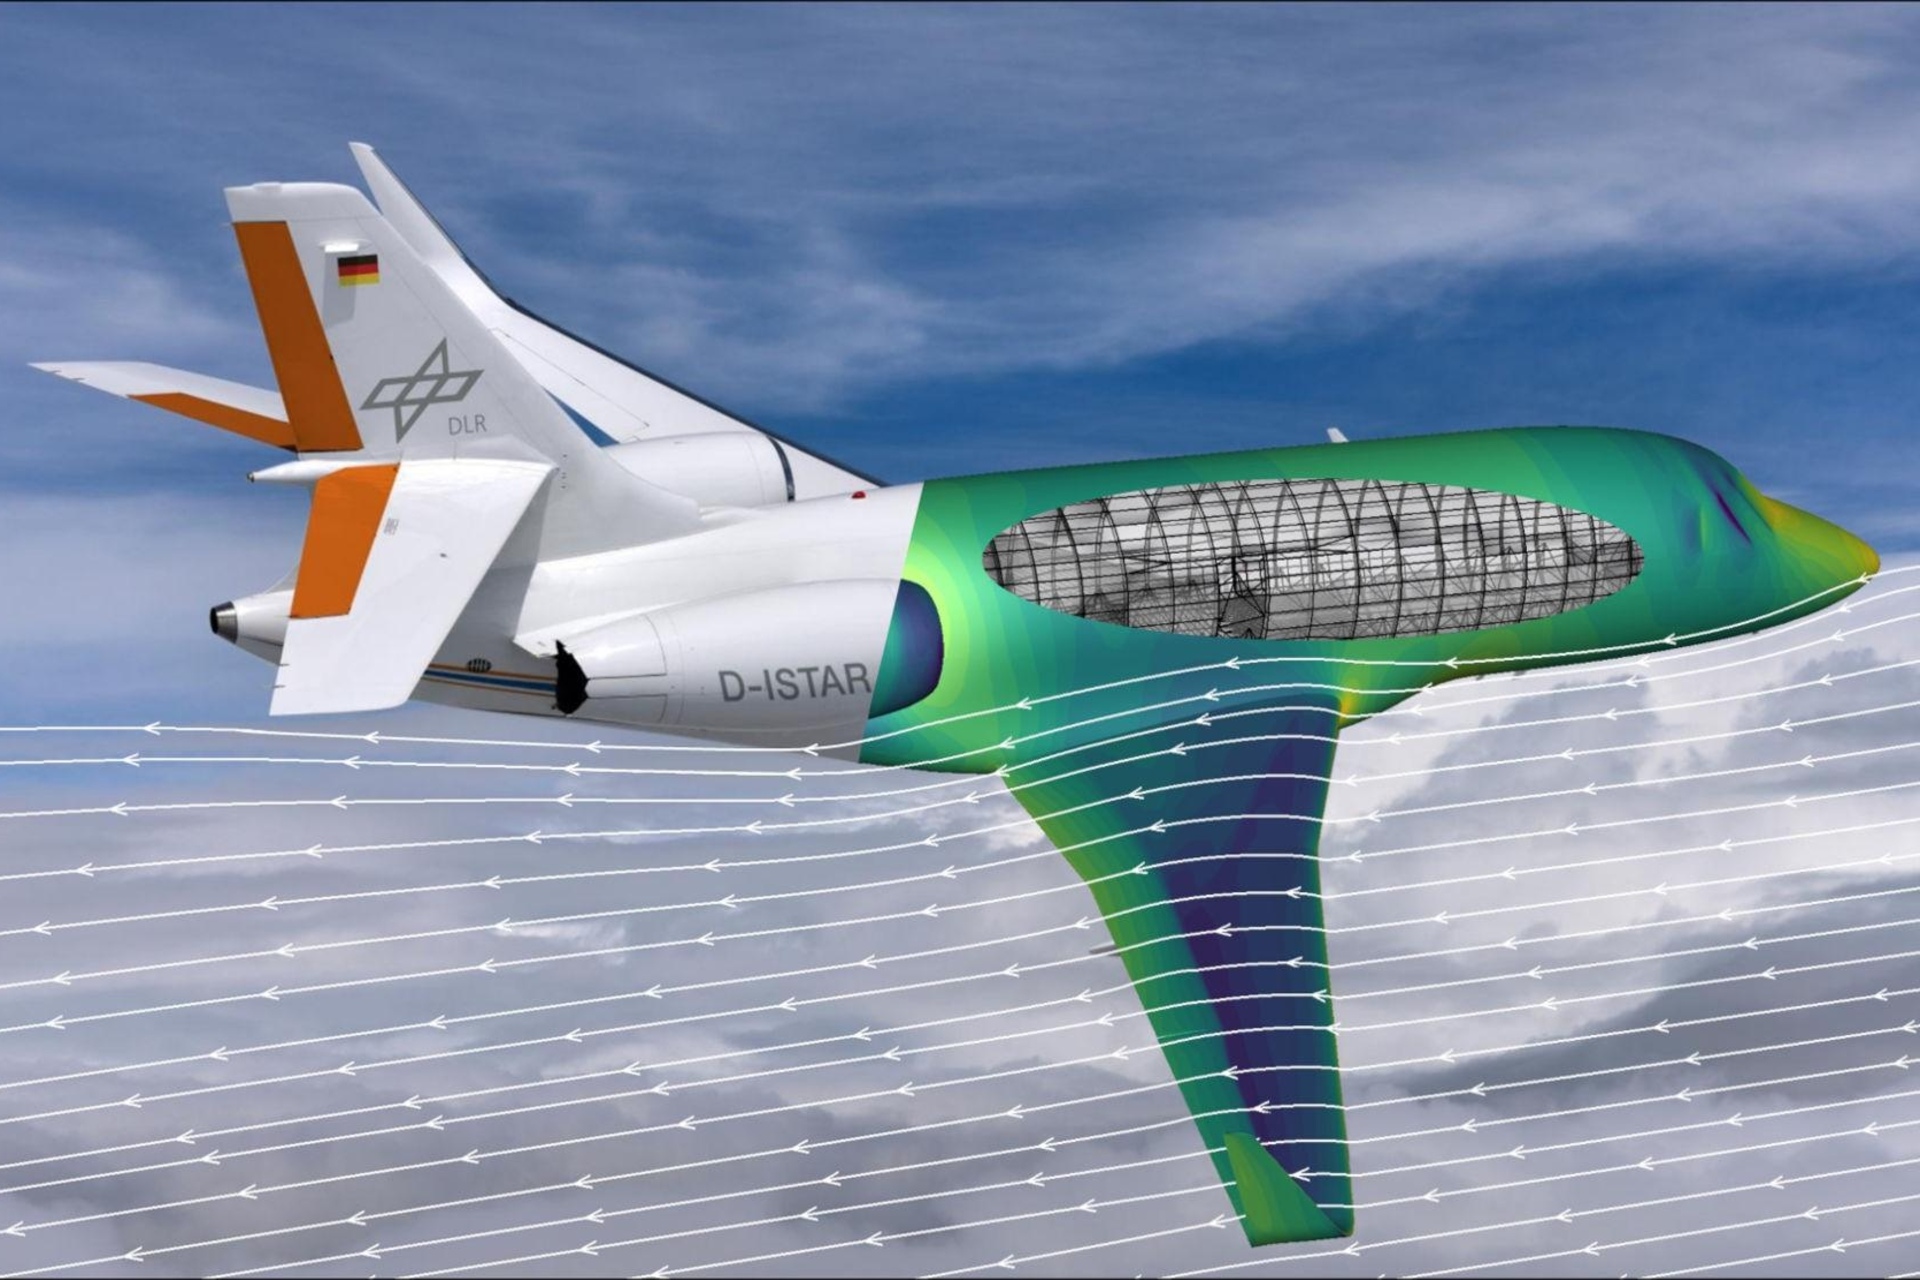 CFD: Bilgisayar destekli aerodinamik akış simülasyonu, hesaplamalı sıvı dinamiği veya CFD, yeni nesil uçakların geliştirilmesinin temelidir: DLR'nin ISTAR araştırma uçağı, gerçekleştirilen bir akış simülasyonunun renk gradyanı kullanılarak görselleştirilmiş bir bölümle gösterilir. Airbus, DLR ve ONERA tarafından geliştirilen yeni yazılım ile